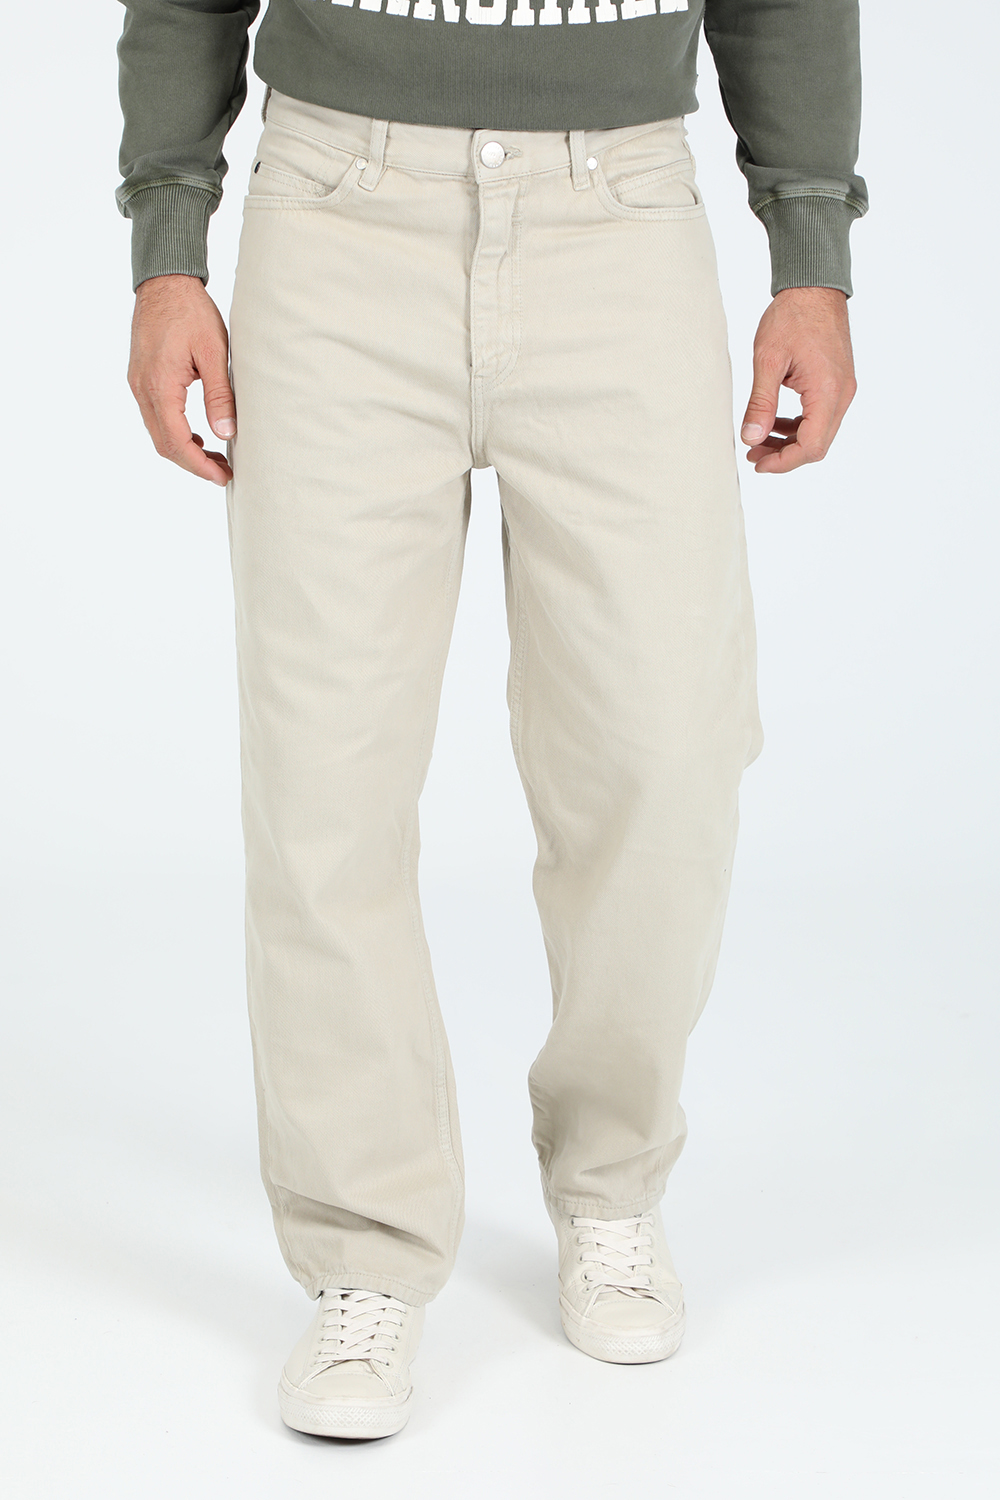 Ανδρικά/Ρούχα/Τζίν/Loose GABBA - Ανδρικό jean παντελόνι GABBA Zem K3992 μπεζ